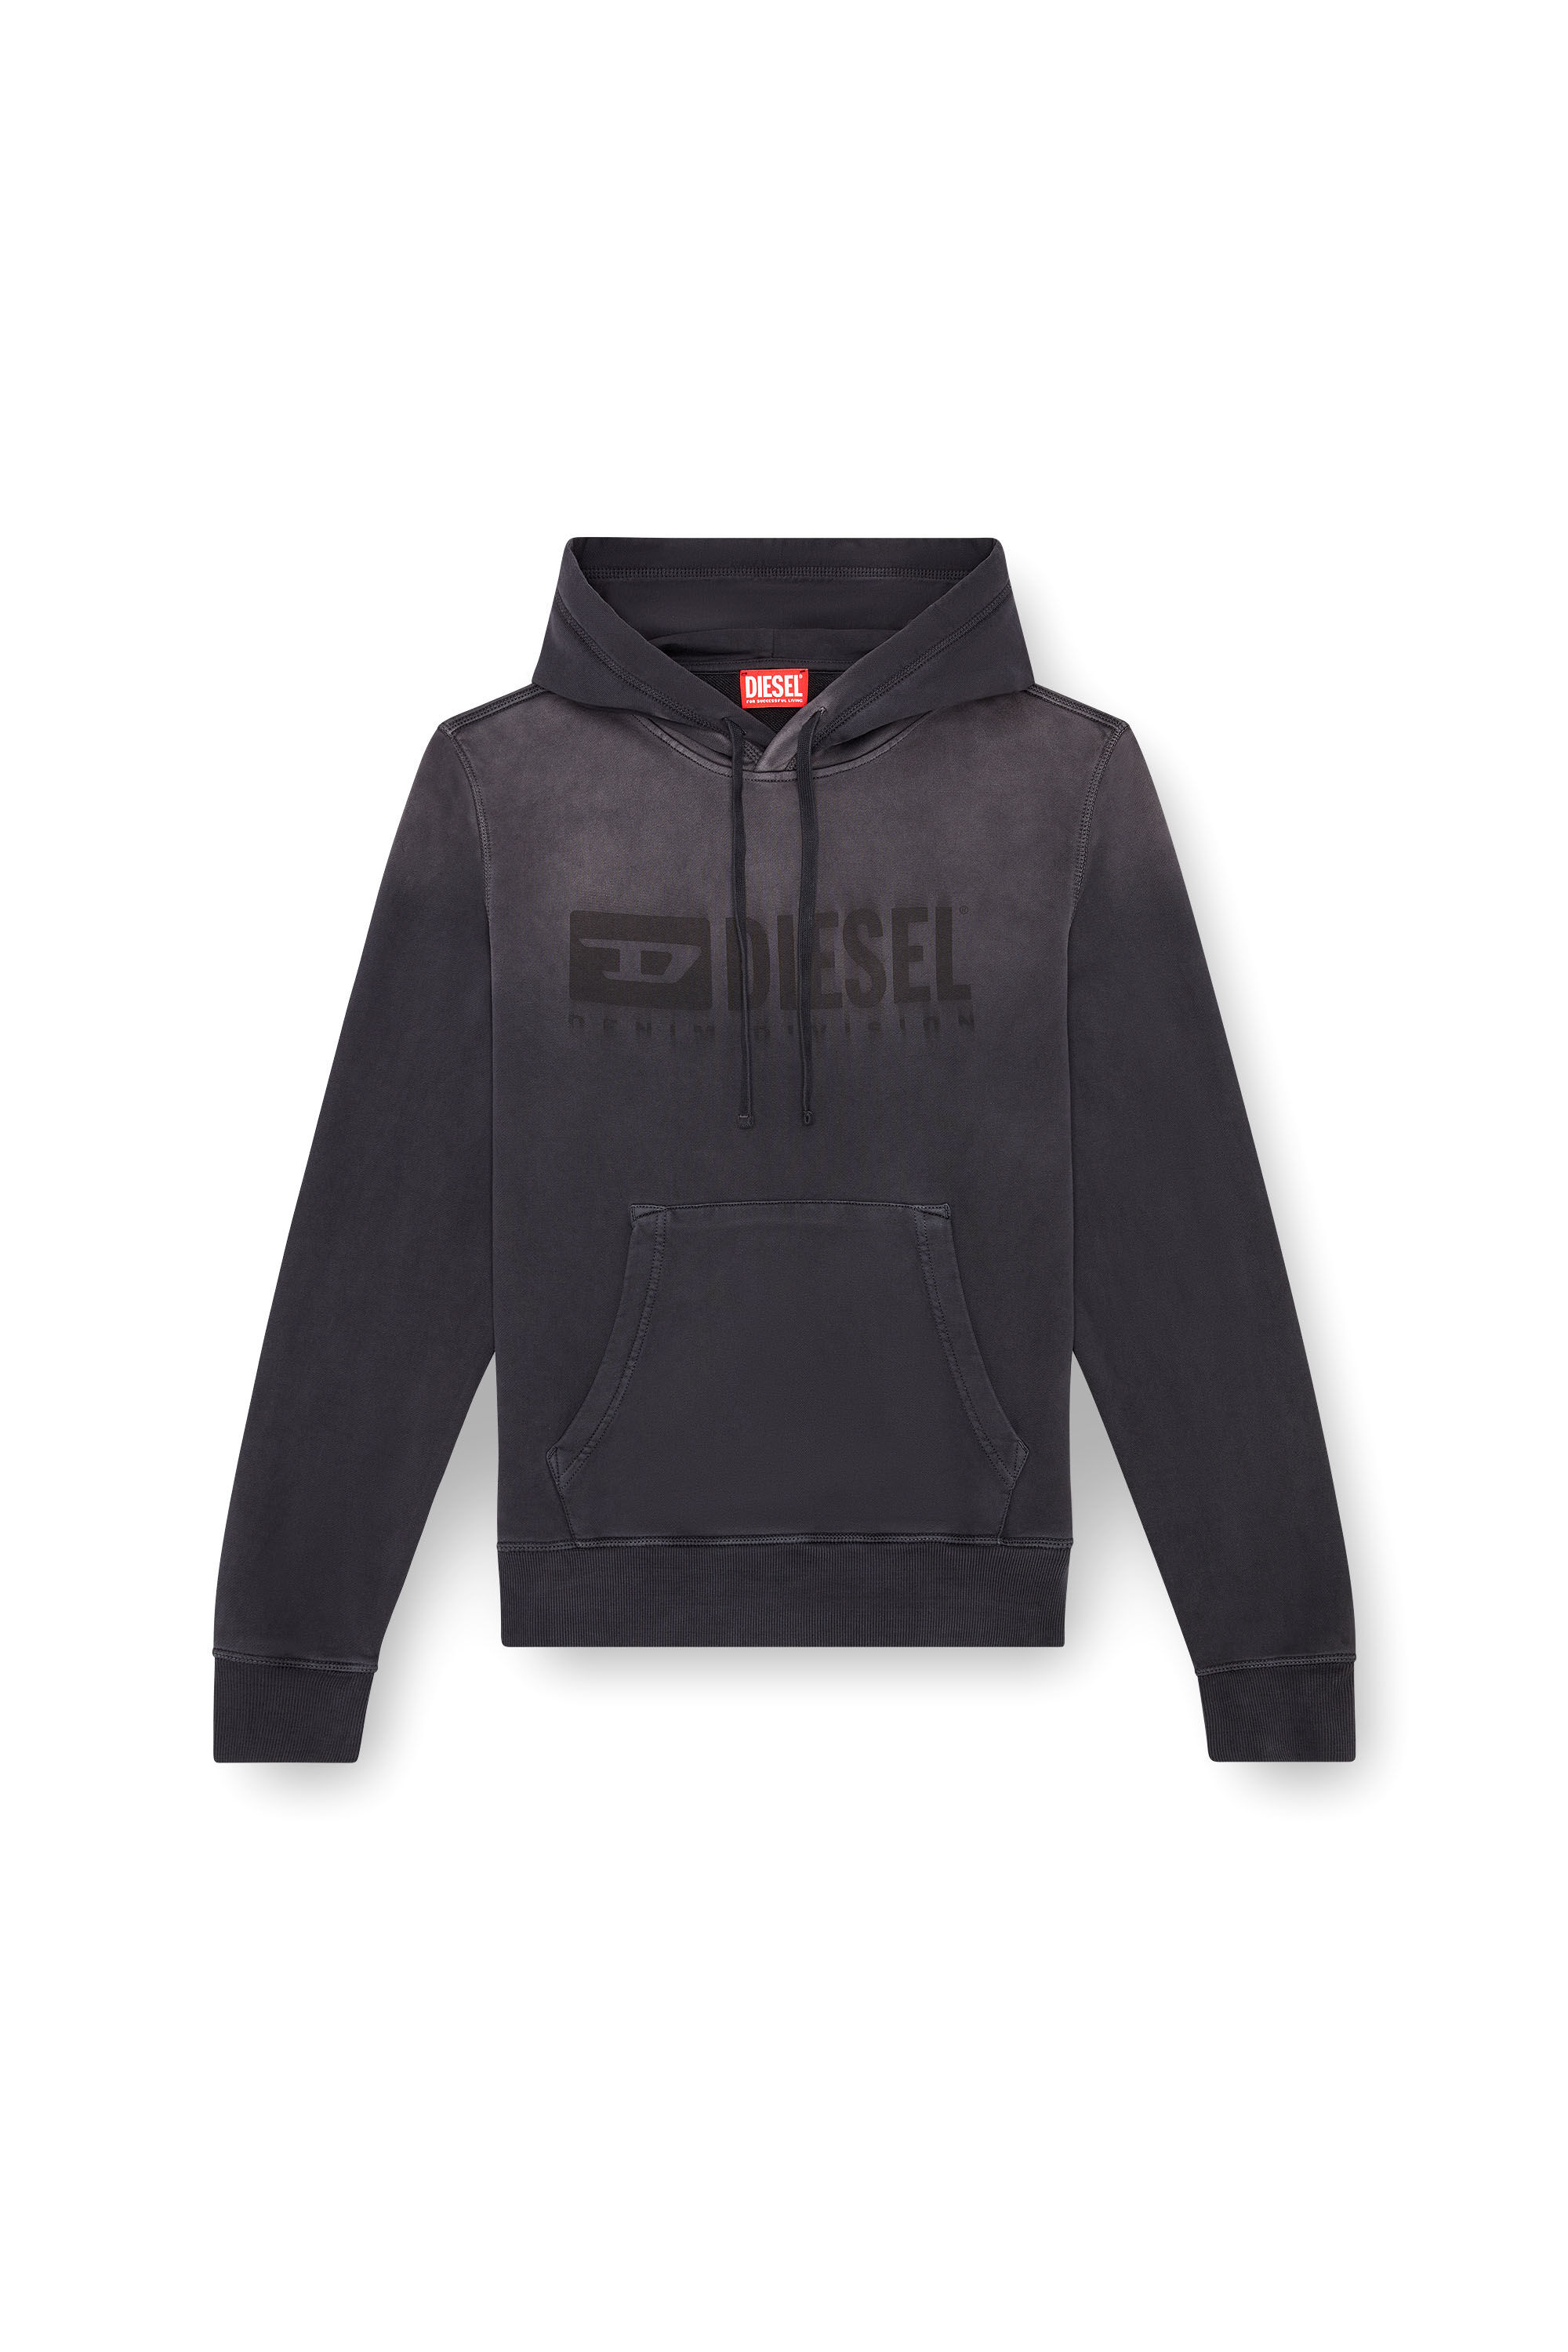 Diesel - S-GINN-HOOD-K44, Man Faded hoodie with Denim Division logo in Black - Image 2